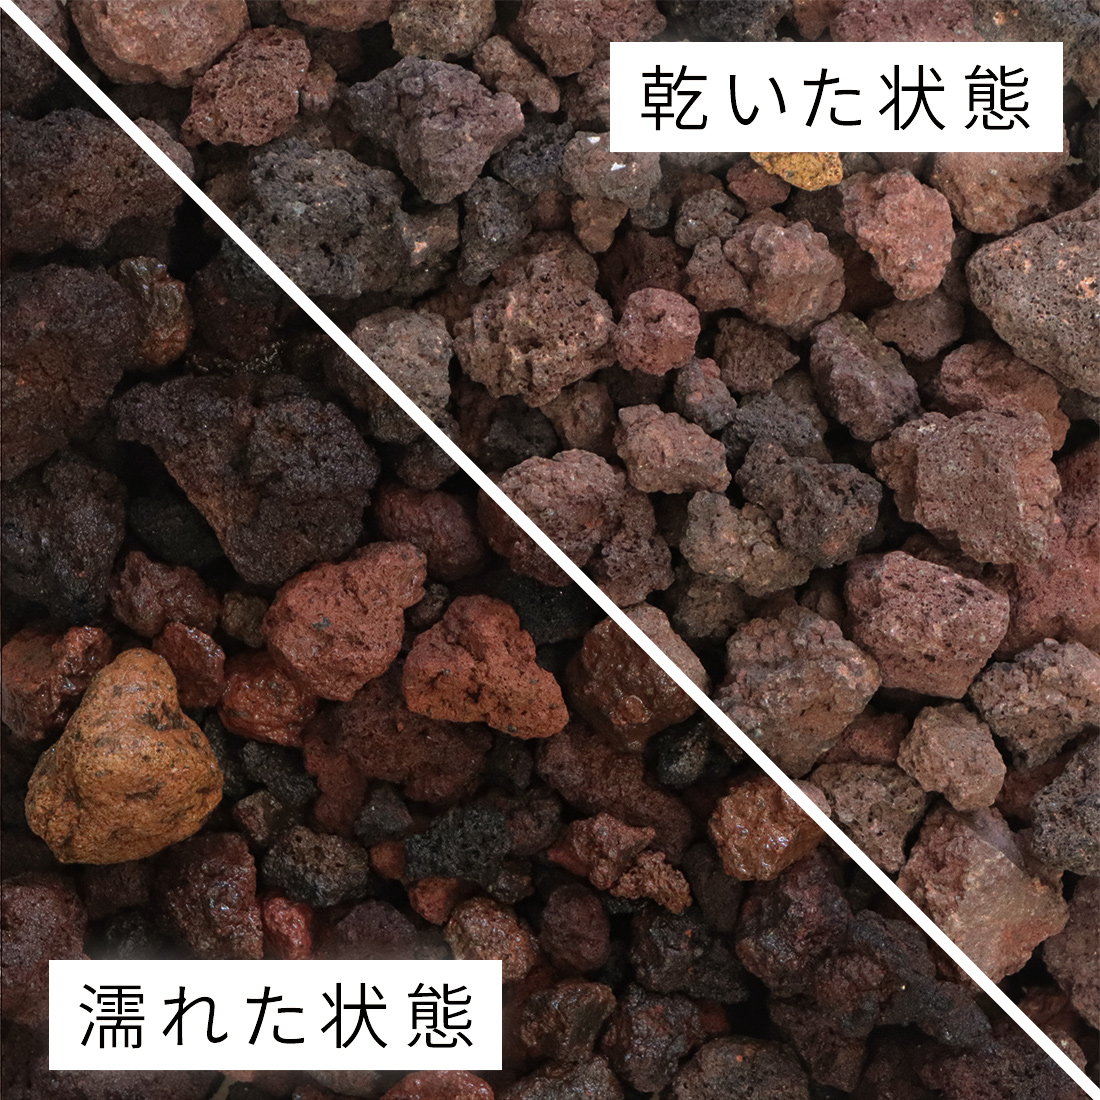 建材 琉球石灰岩 100-200mm 50kg (10kg×5箱) - 3